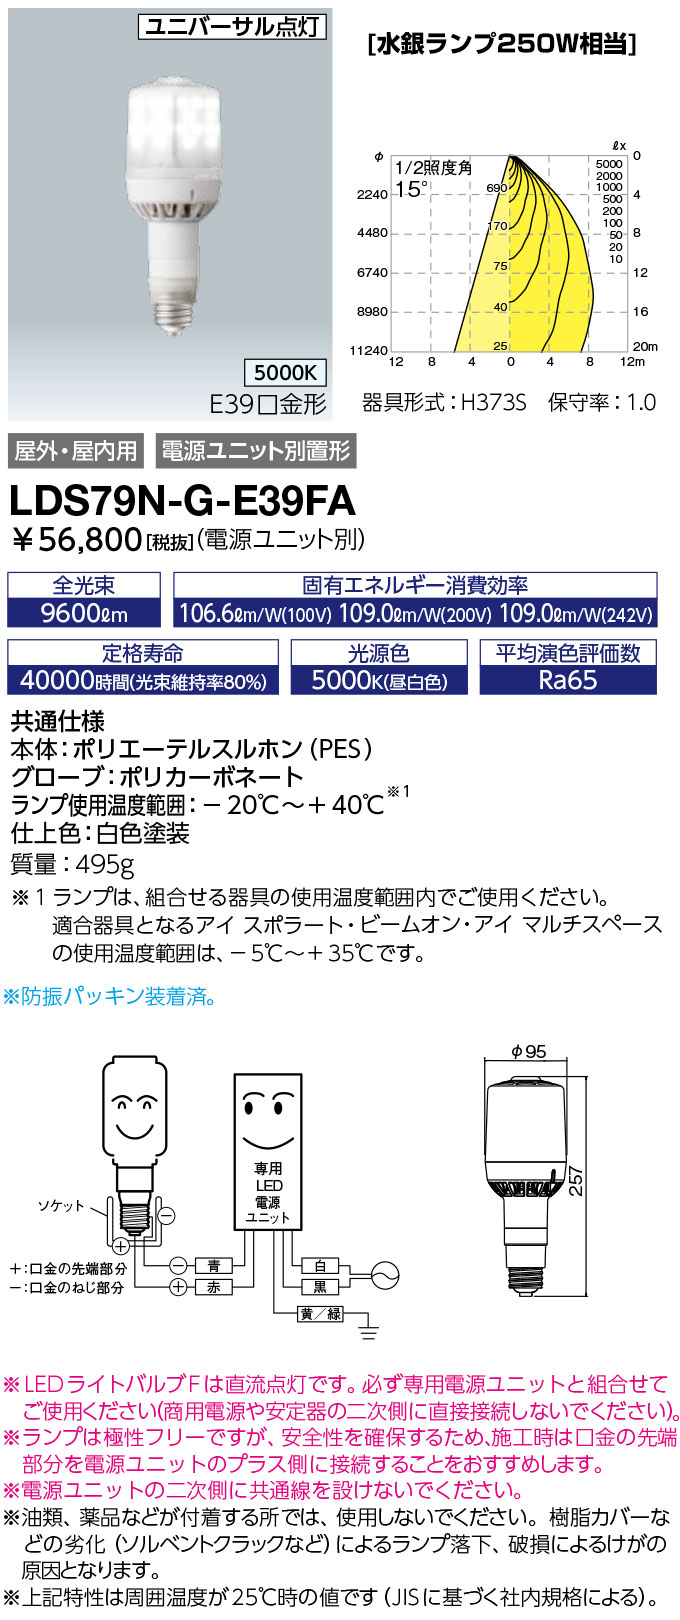 LDS79N-G-E39FA ランプ レディオック LEDライトバルブF水銀ランプ250W相当 極性フリー E39口金 79W 昼白色岩崎電気  ランプ タカラショップ